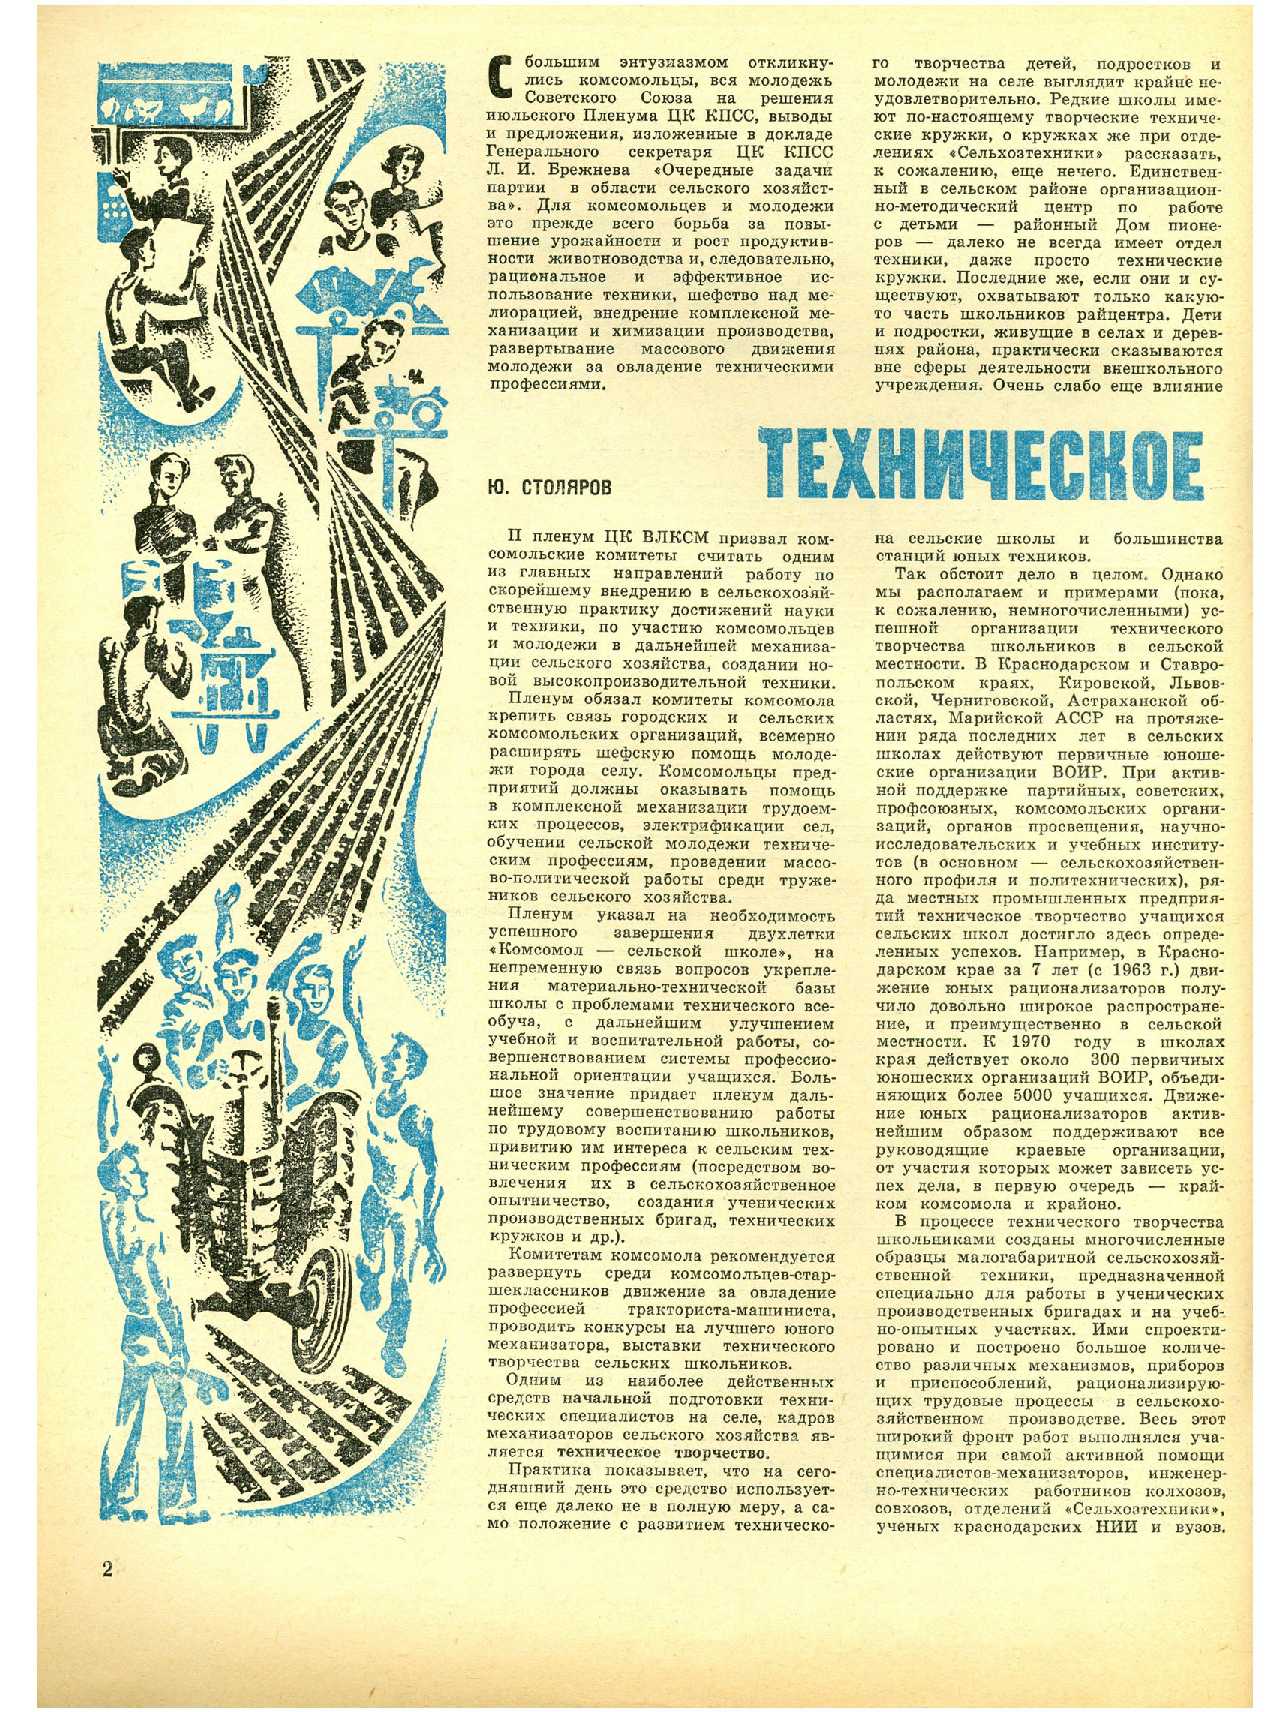 МК 10, 1970, 2 c.